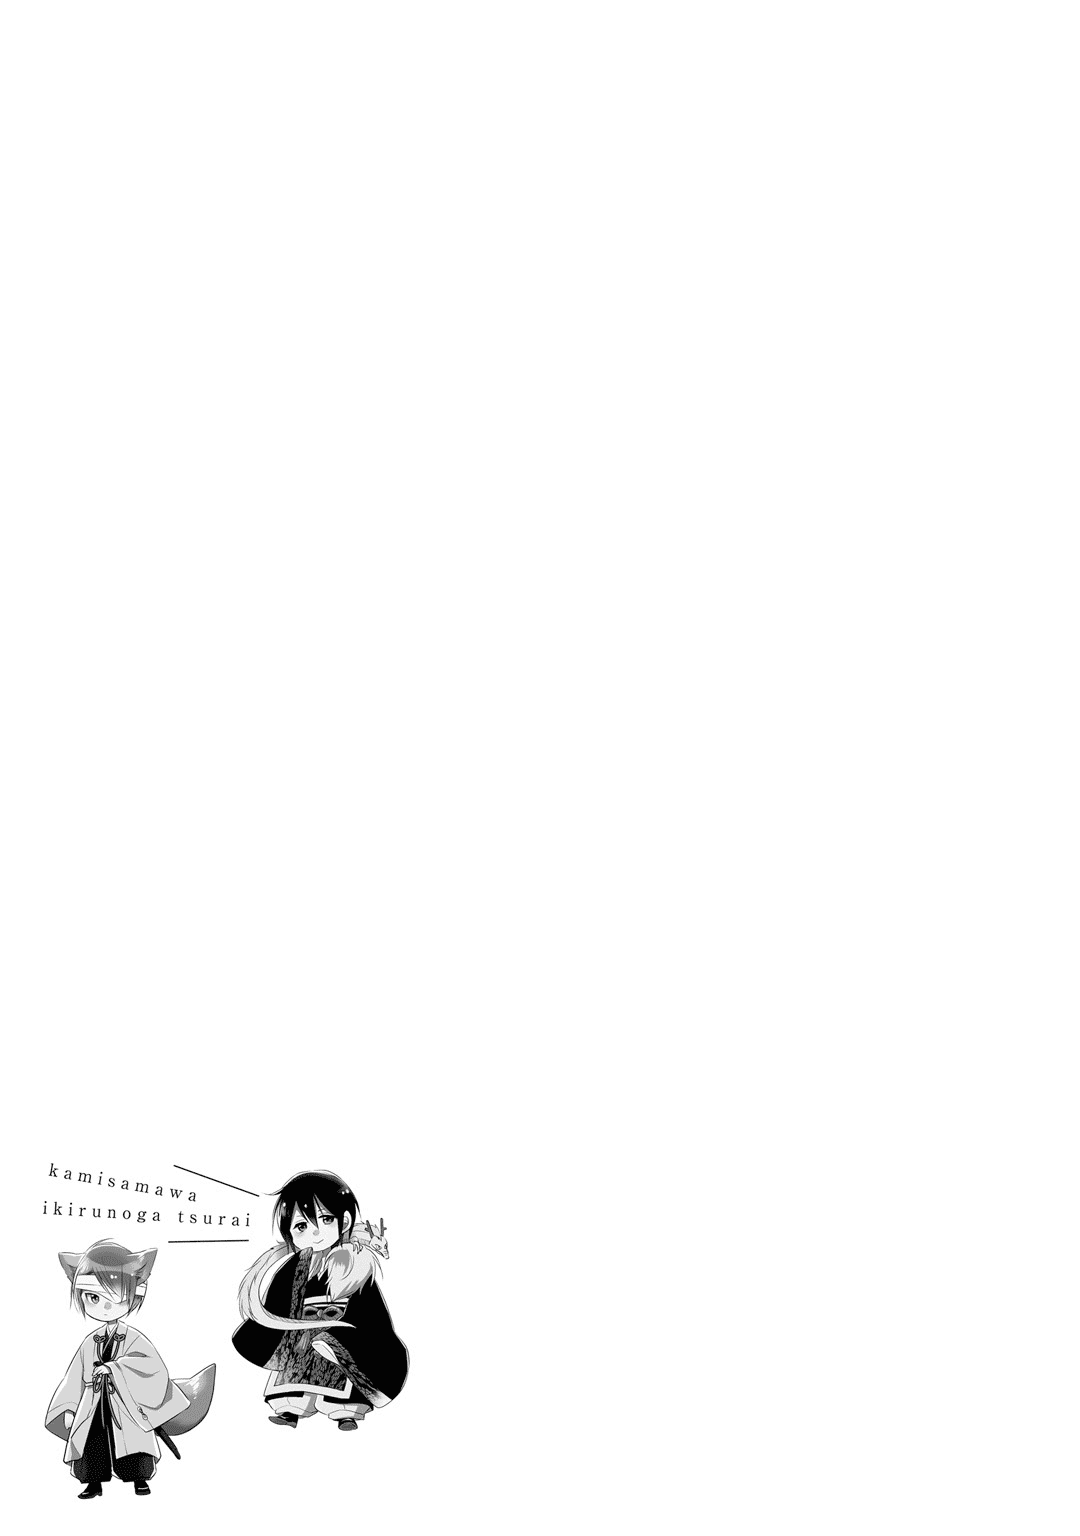 Kami-sama wa Ikiru no ga Tsurai chapter 10 - page 29